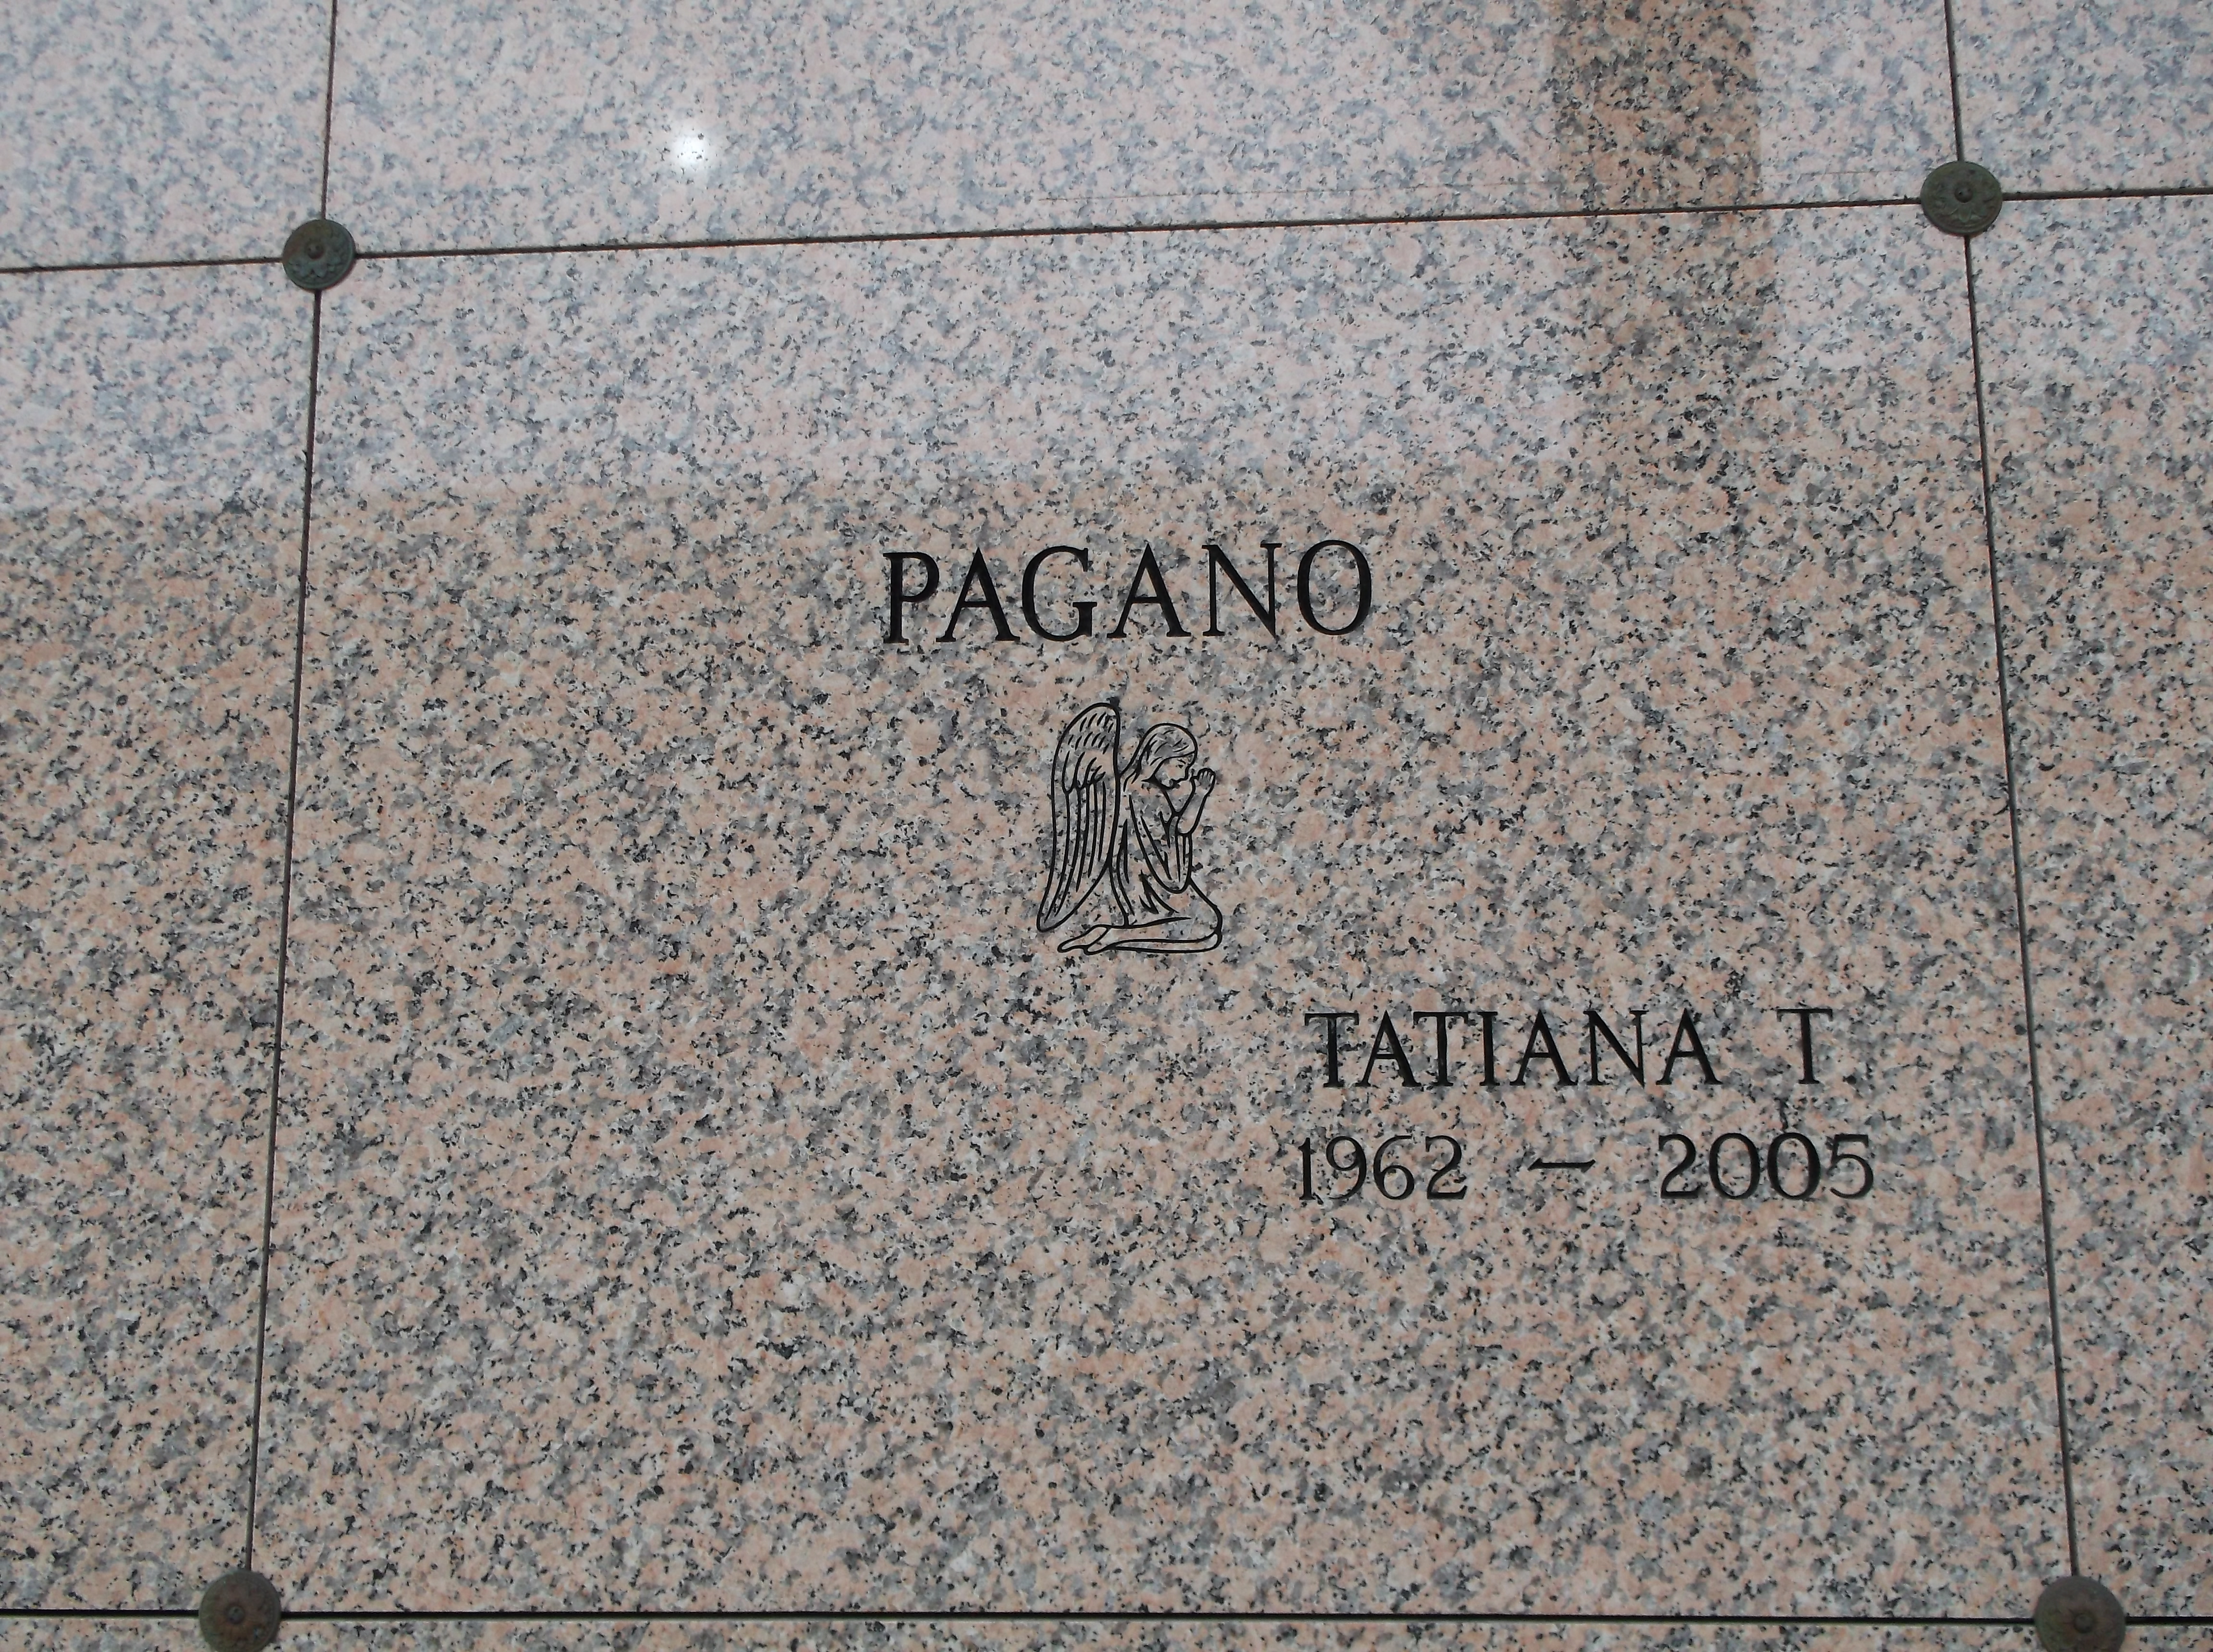 Tatiana T Pagano